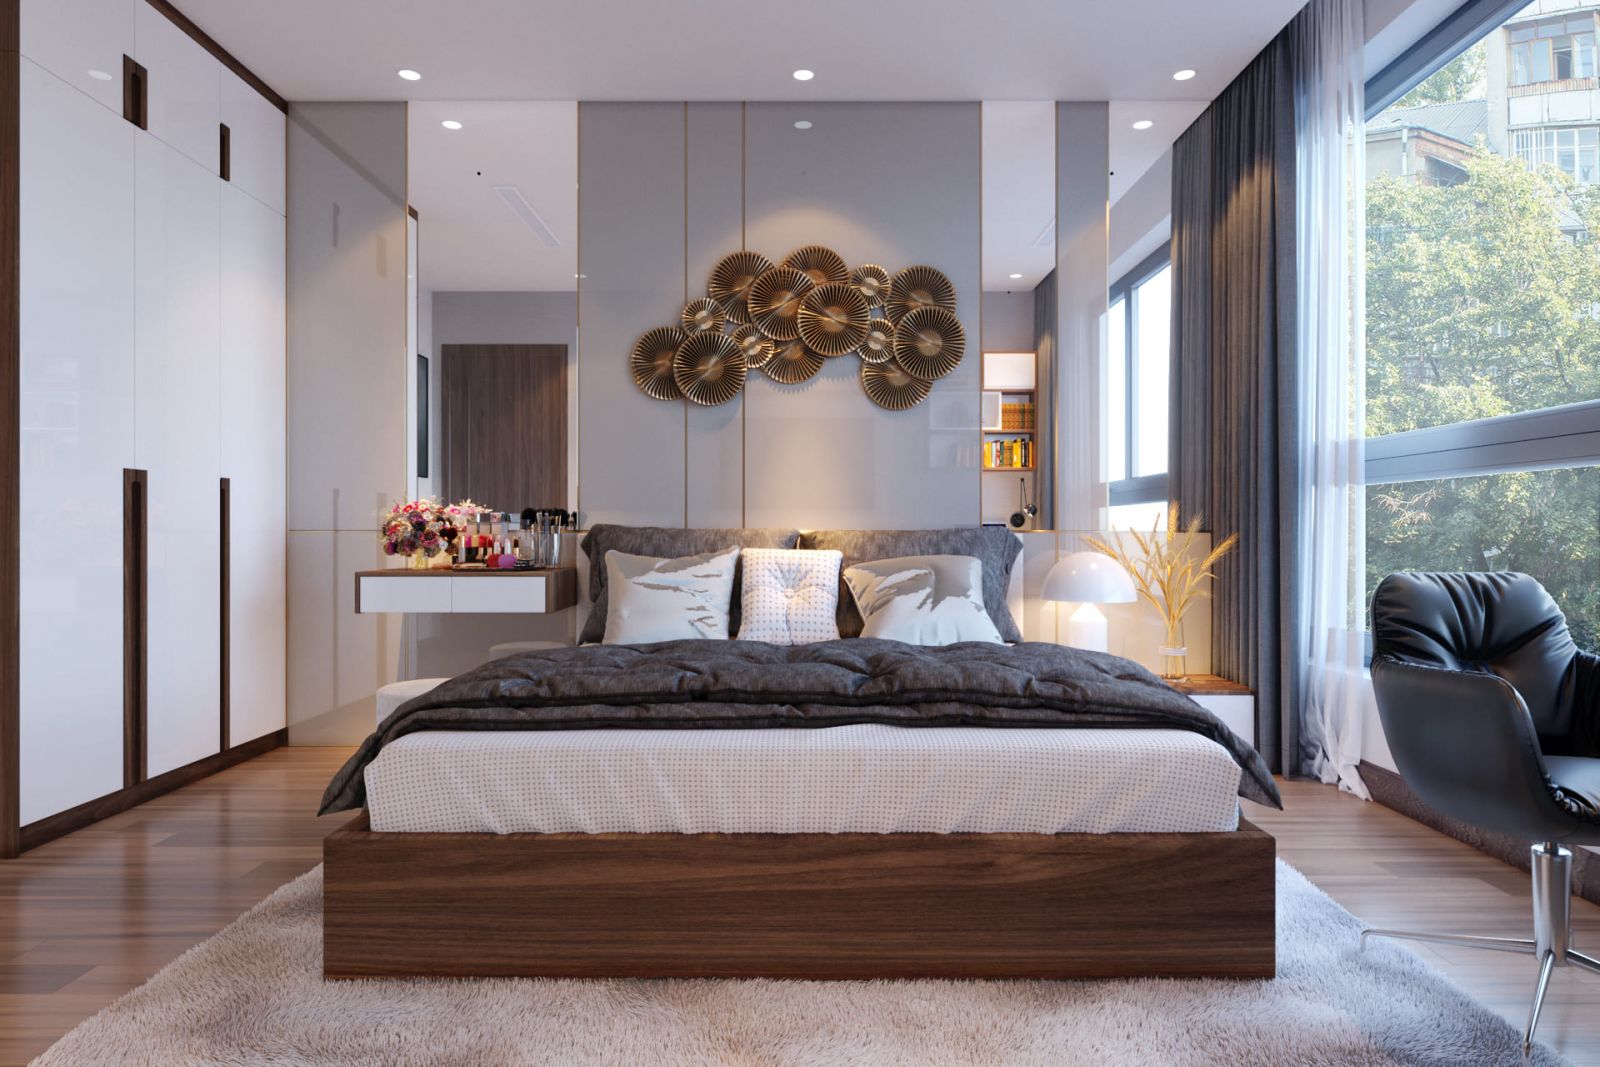 Phòng ngủ master rộng rãi, thiết kế nội thất sang trọng, gọn đẹp với ban công riêng ngập tràn ánh sáng tự nhiên.